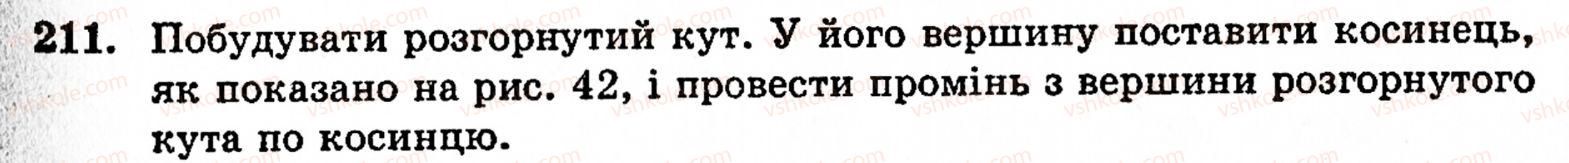 5-matematika-gm-yanchenko-vr-kravchuk-211